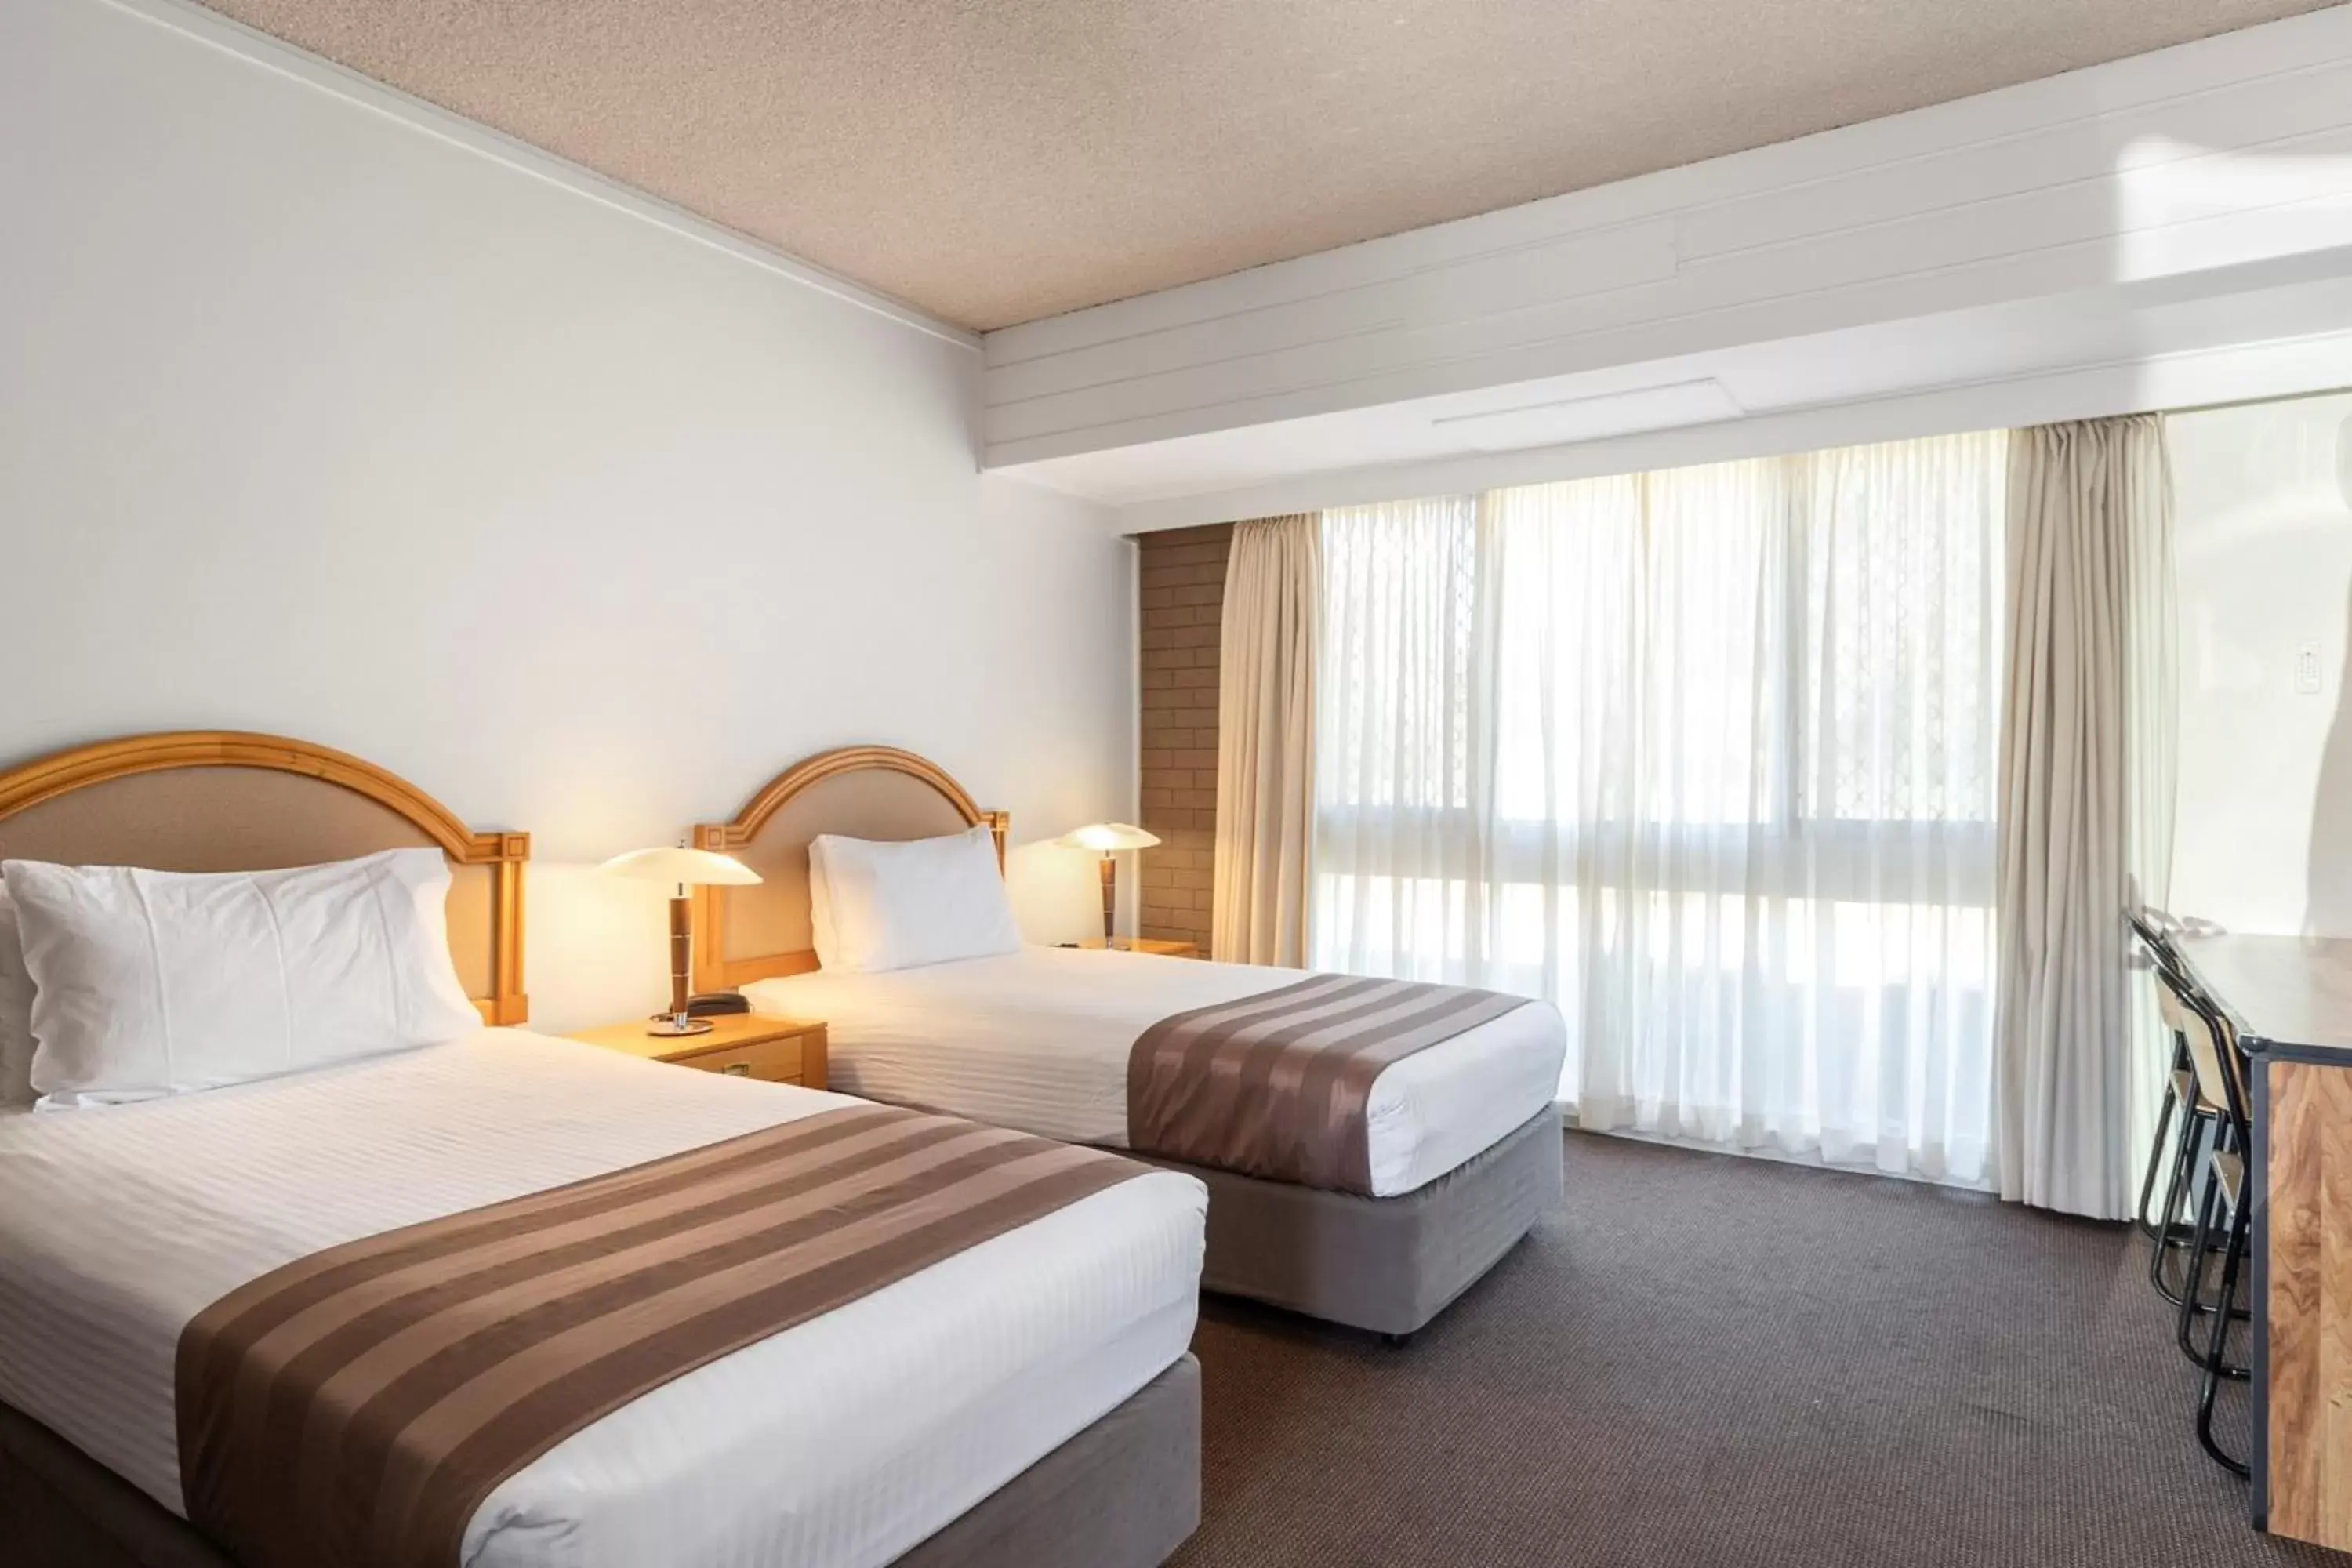 Bedroom, Bed in Quality Inn Dubbo International